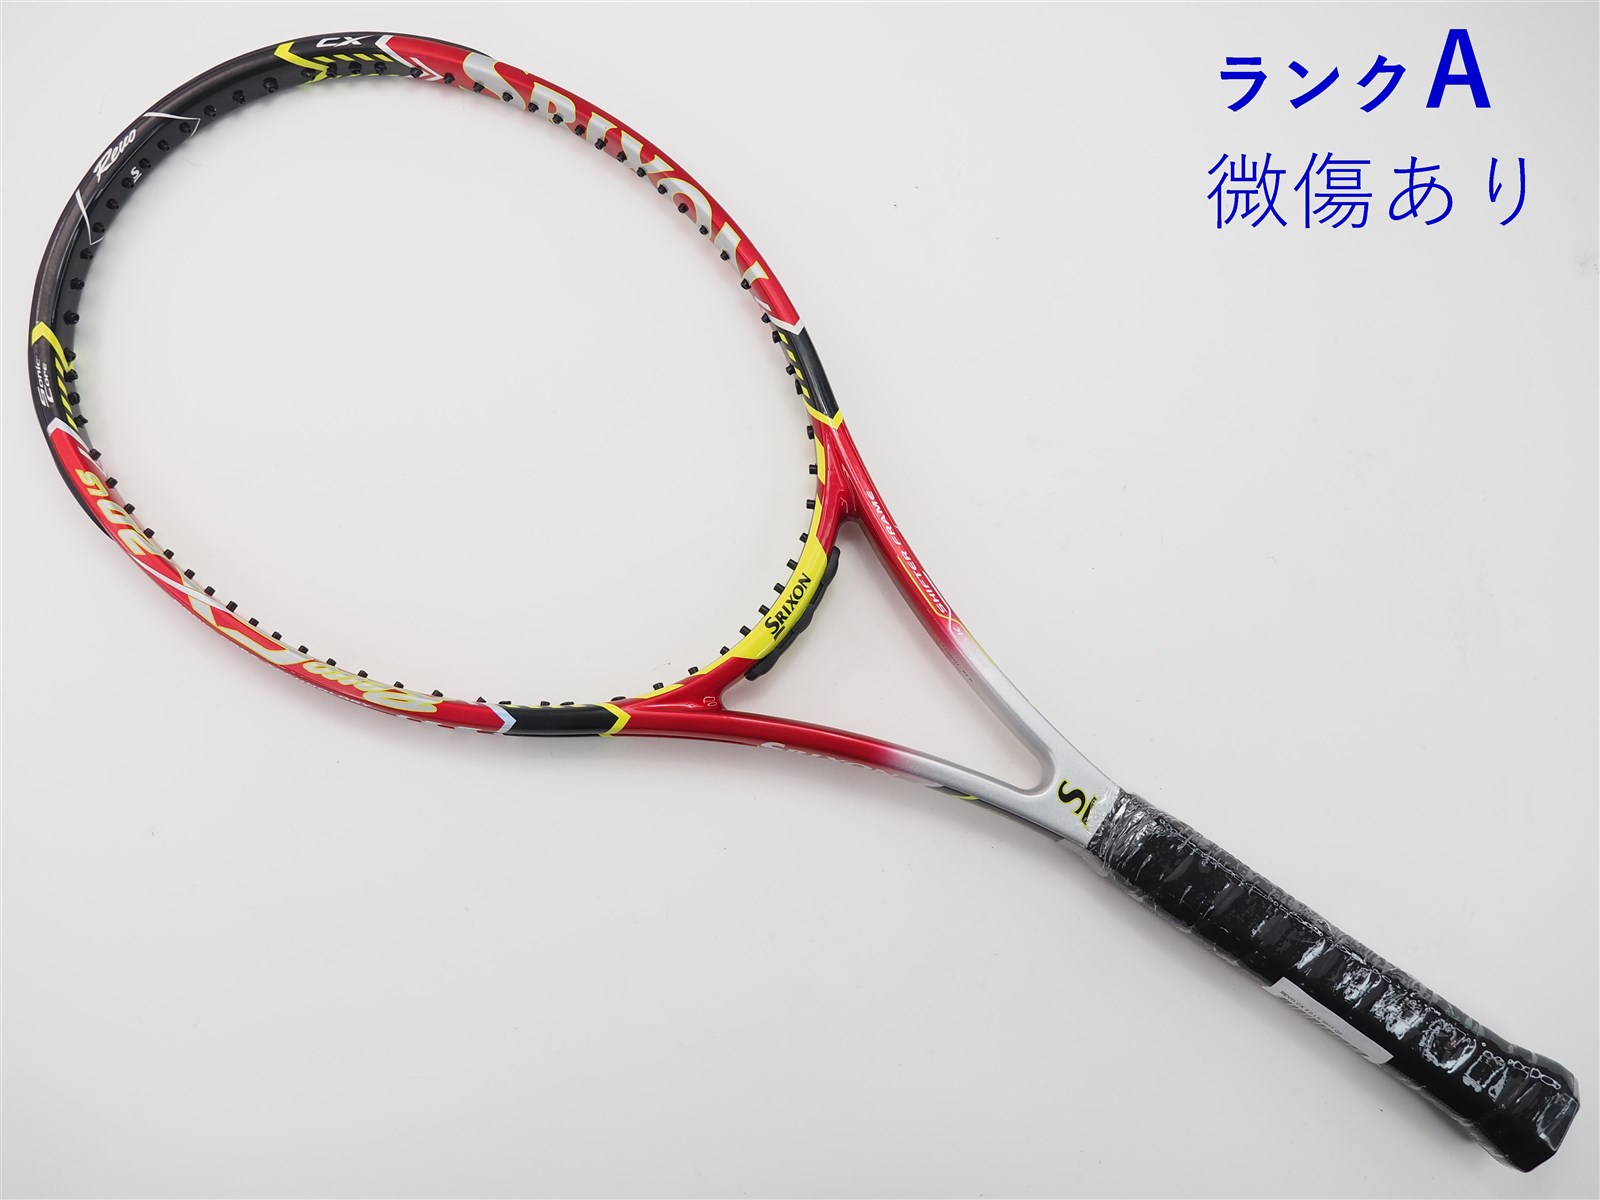 325ｇ張り上げガット状態テニスラケット スリクソン レヴォ エックス 2.0 2011年モデル (G2)SRIXON REVO X 2.0 2011